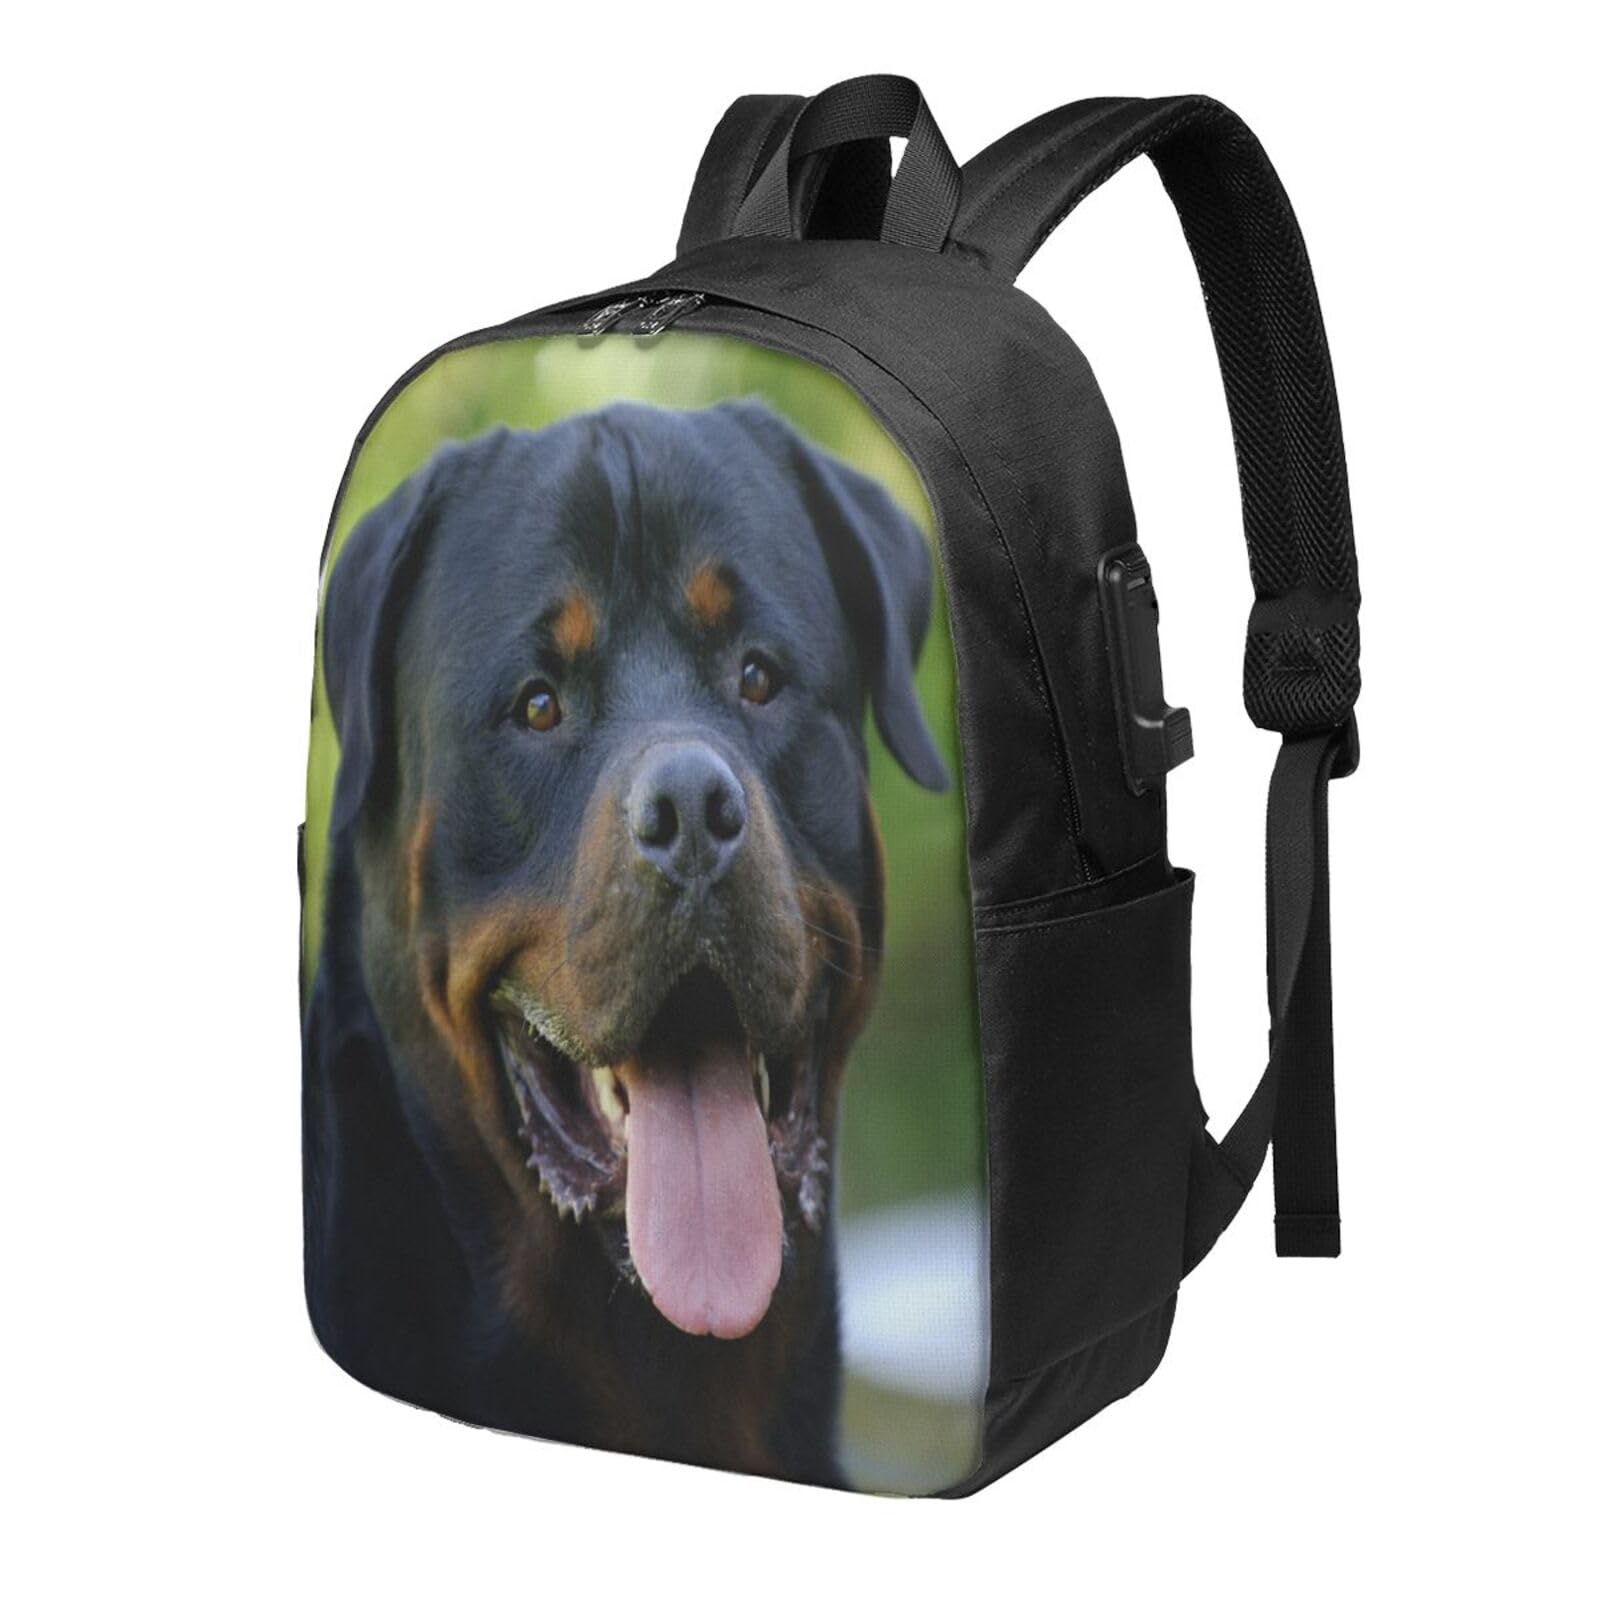 送料無料OUSIKA Rottweiler Laptop Backpack With Usb Charging Port Water Resistant Casual Daypacks Travel Bag For Men Women